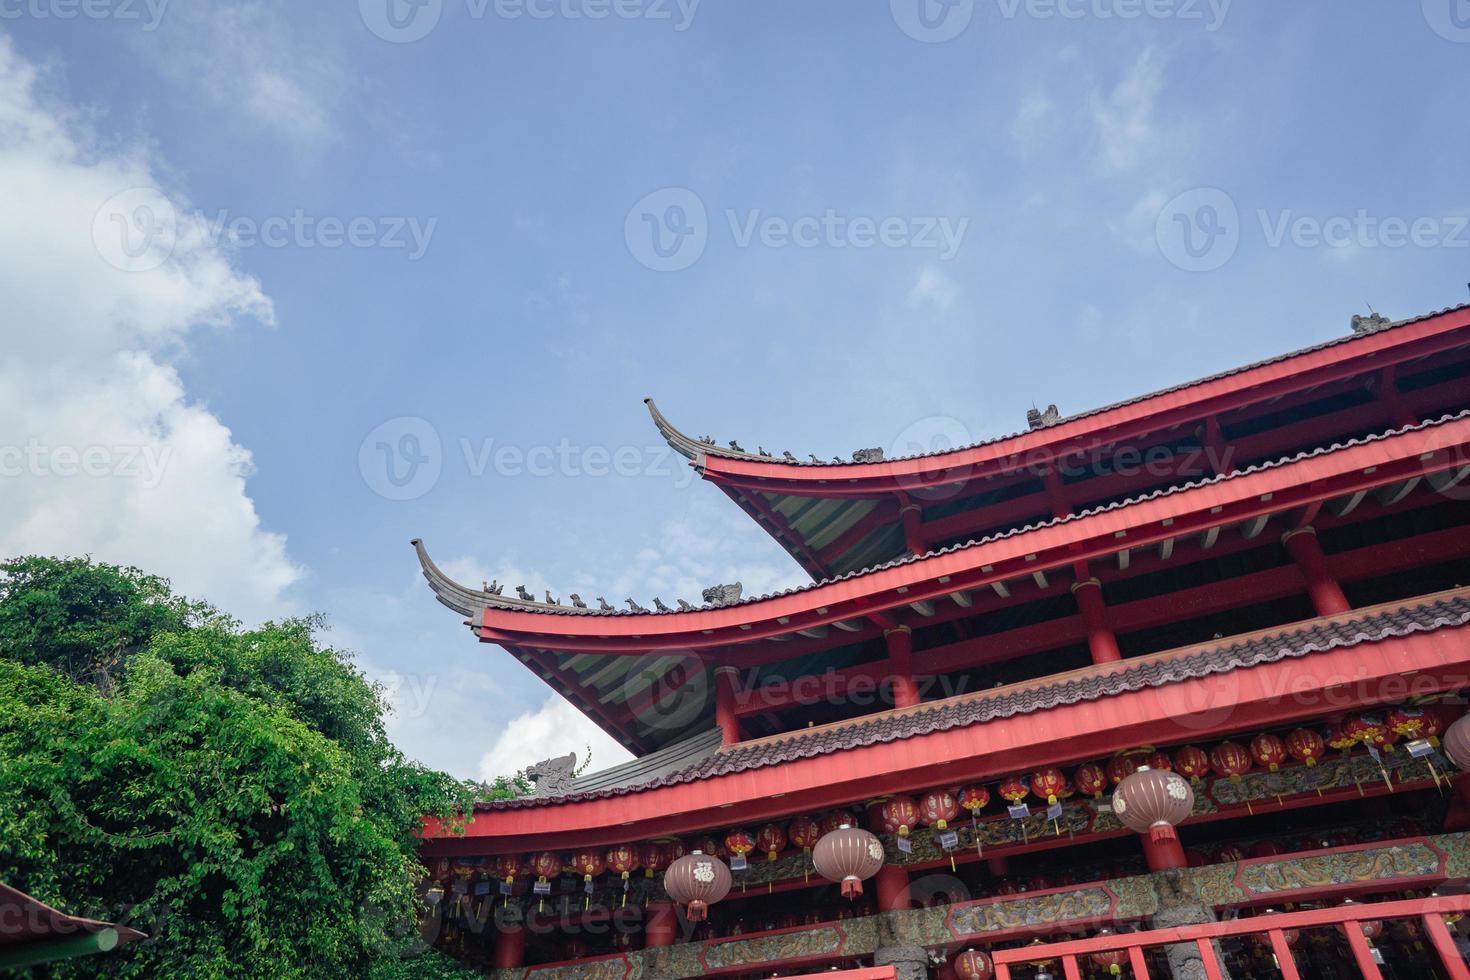 takpannor av traditionell kinesisk tempel när dag tid av kinesisk ny år. de Foto är lämplig till använda sig av för kinesisk ny år, lunar ny år bakgrund och innehåll media.